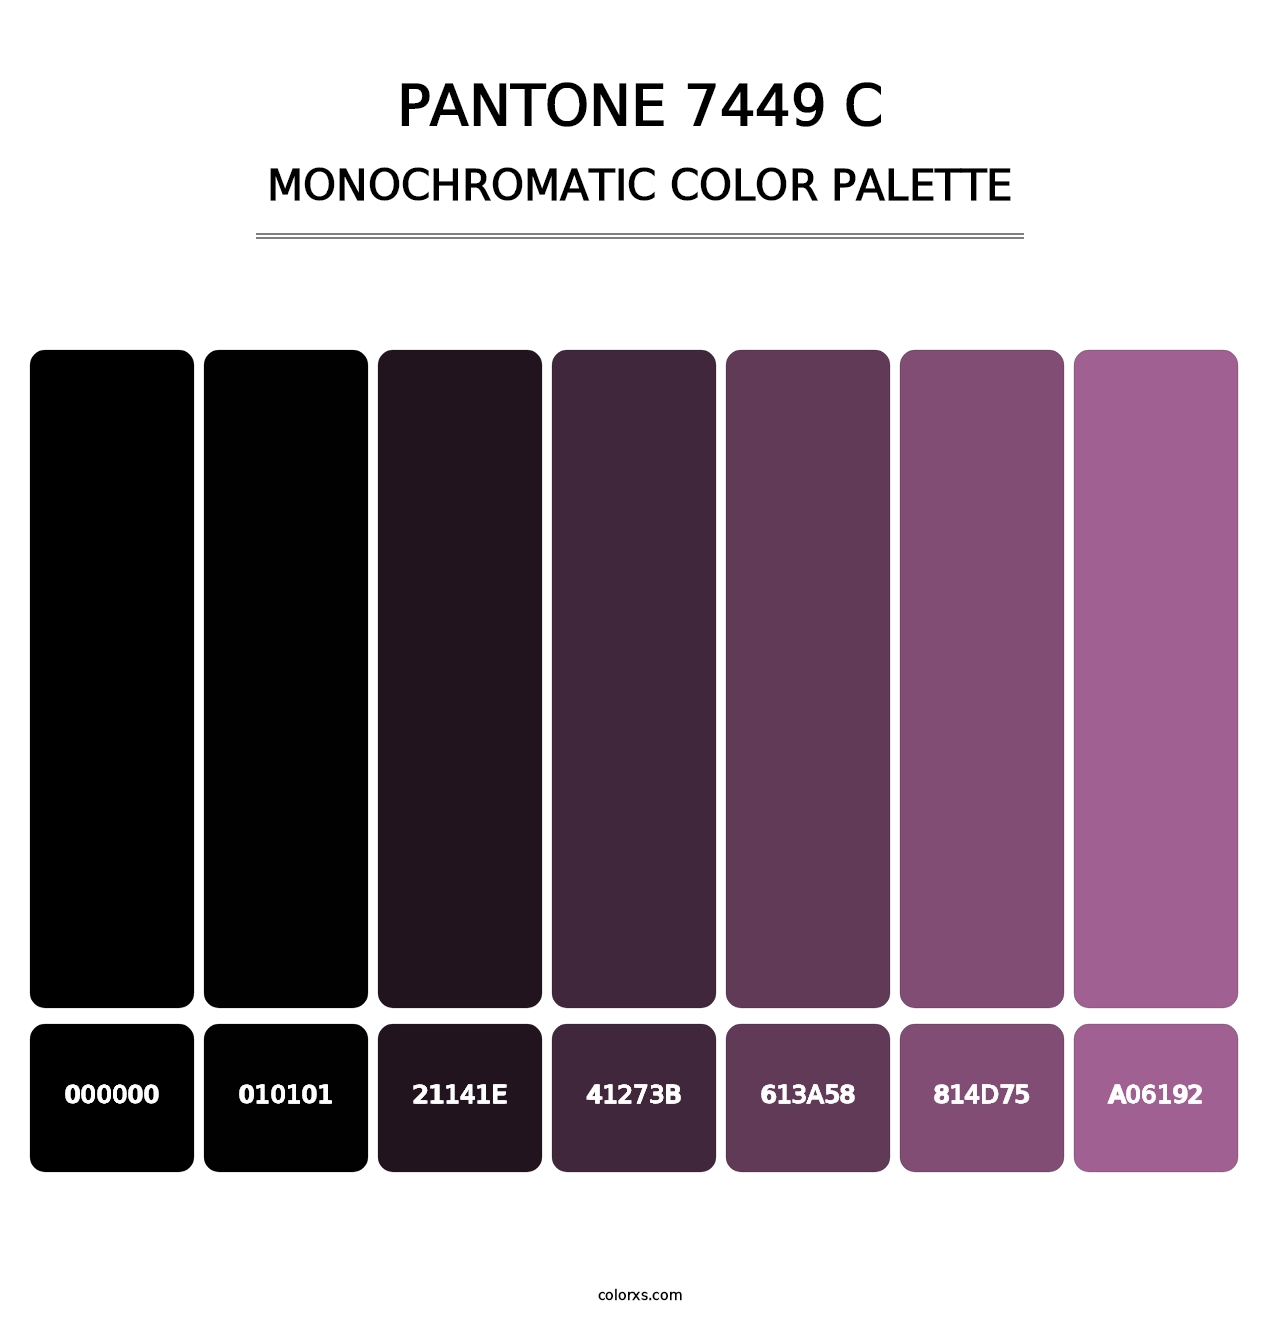 PANTONE 7449 C - Monochromatic Color Palette